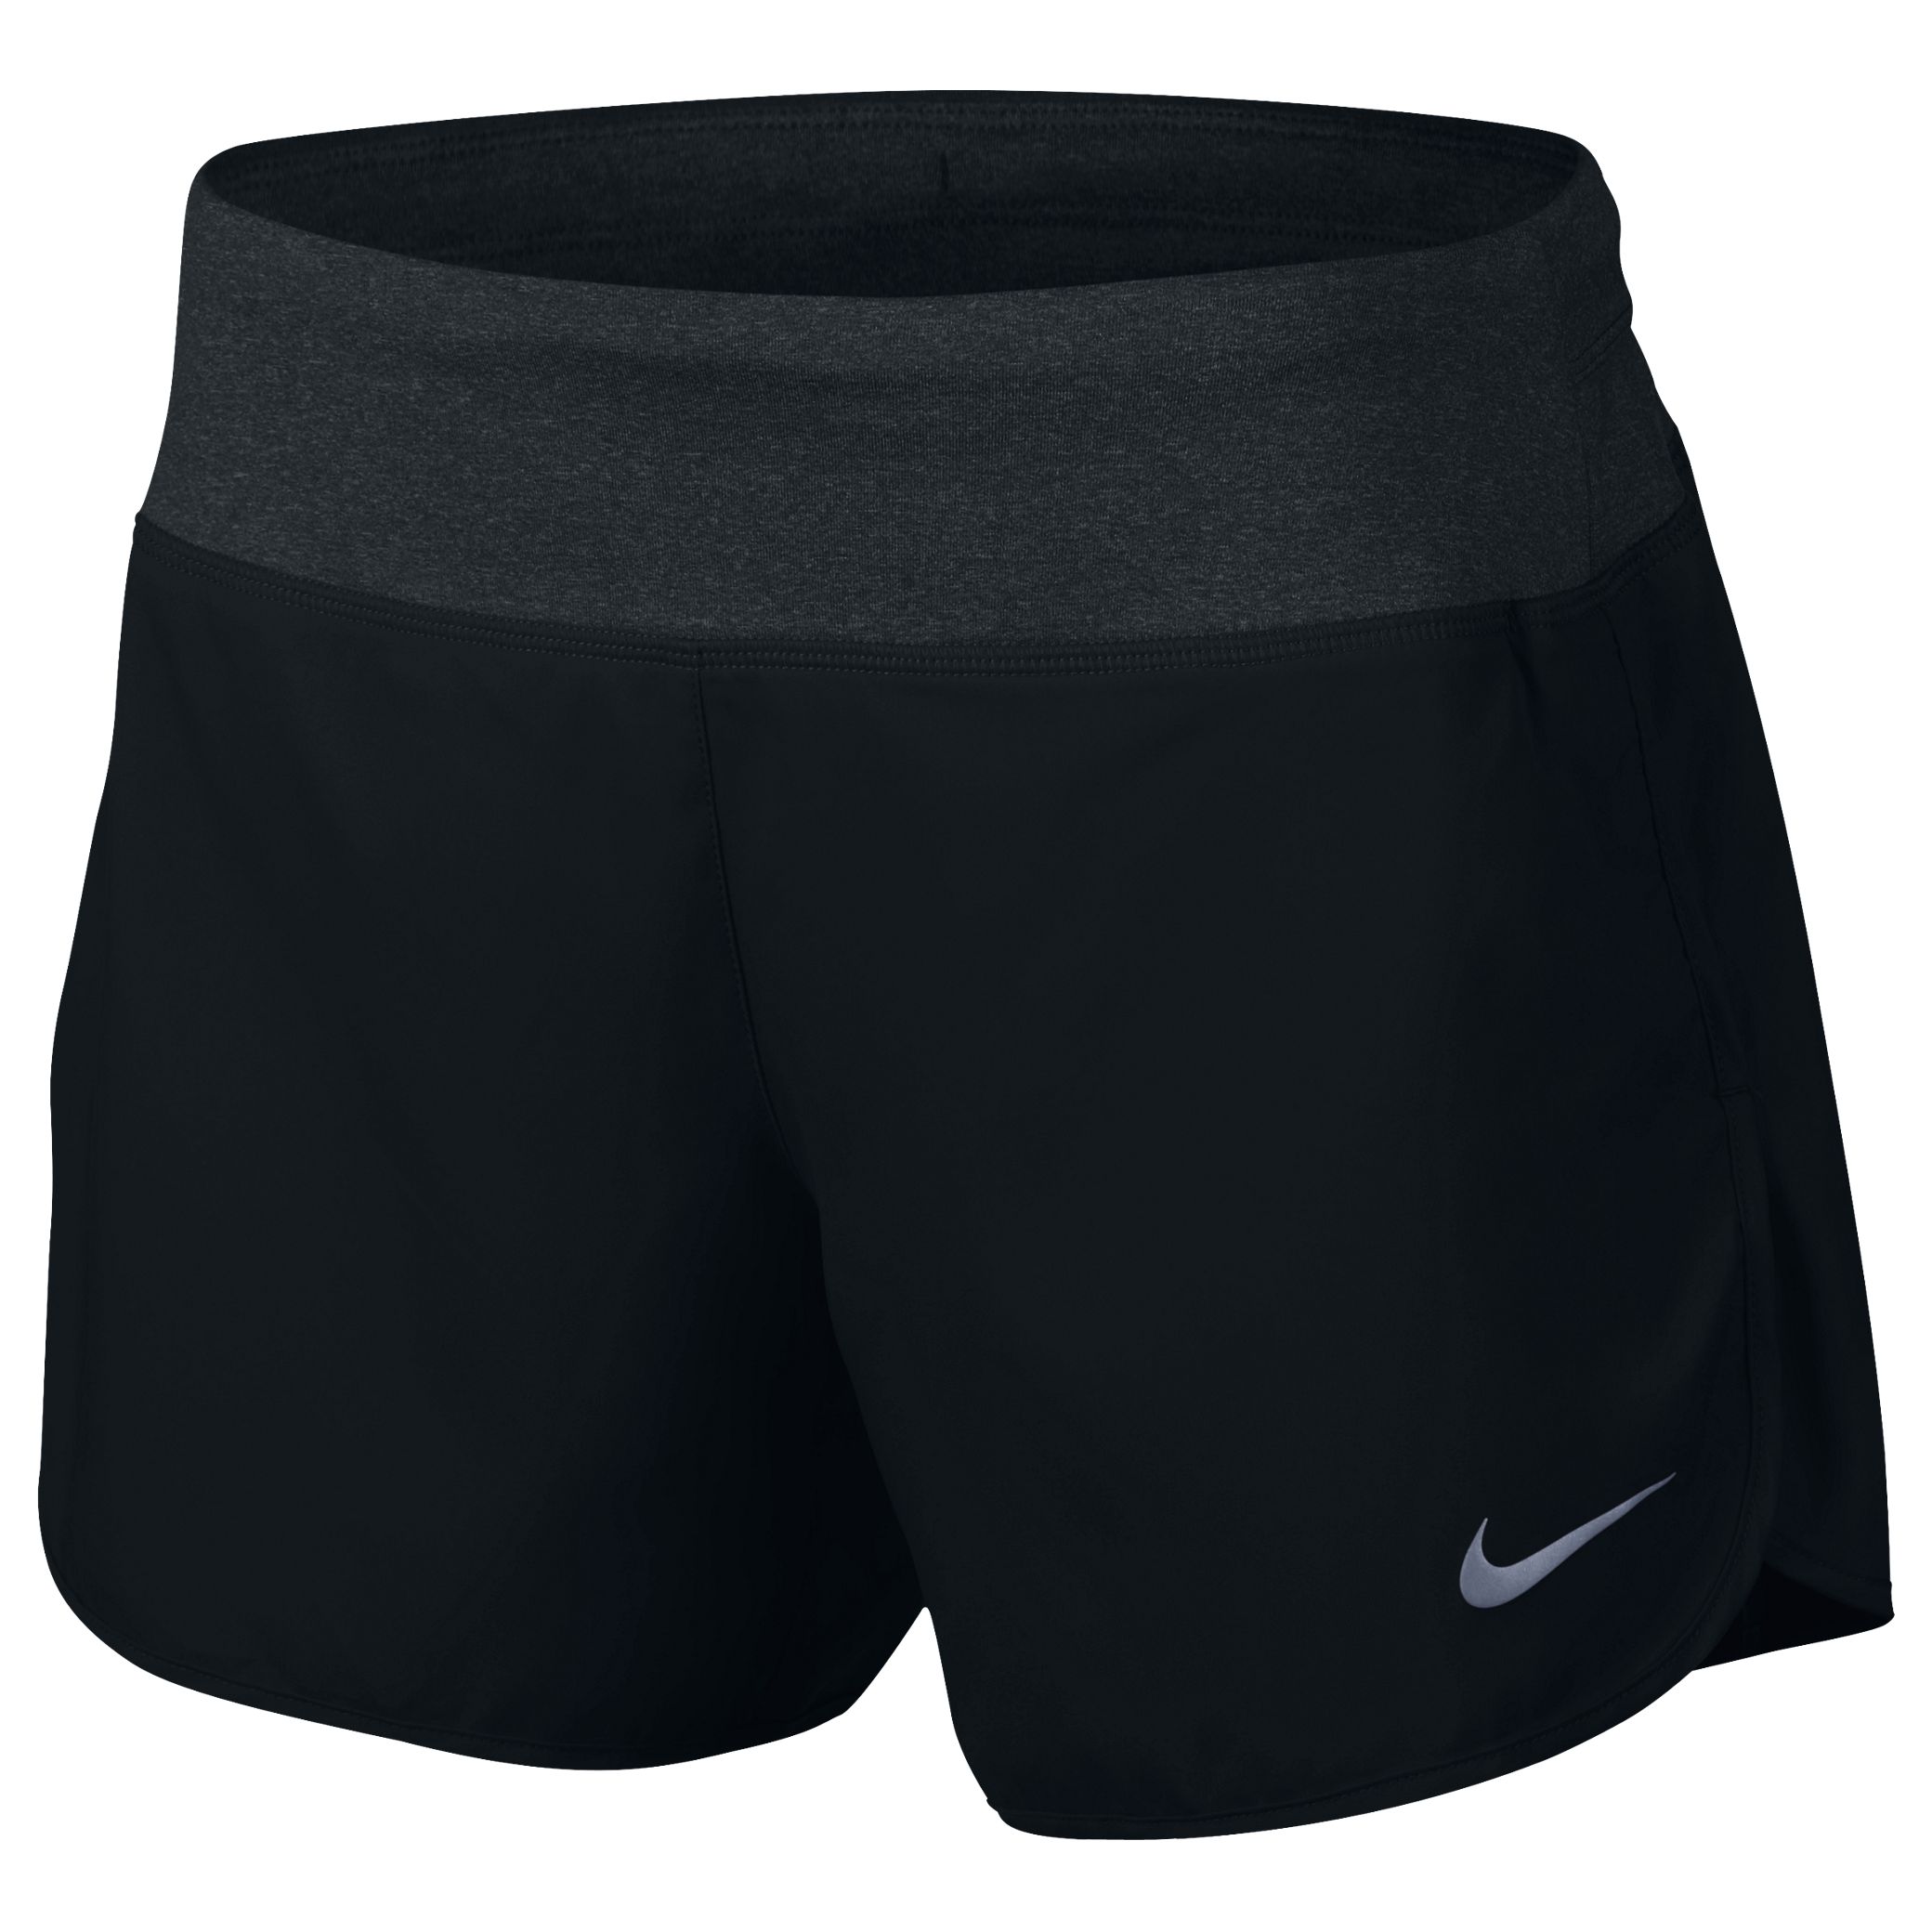 Nike Flex 5” Running Shorts, Black, L